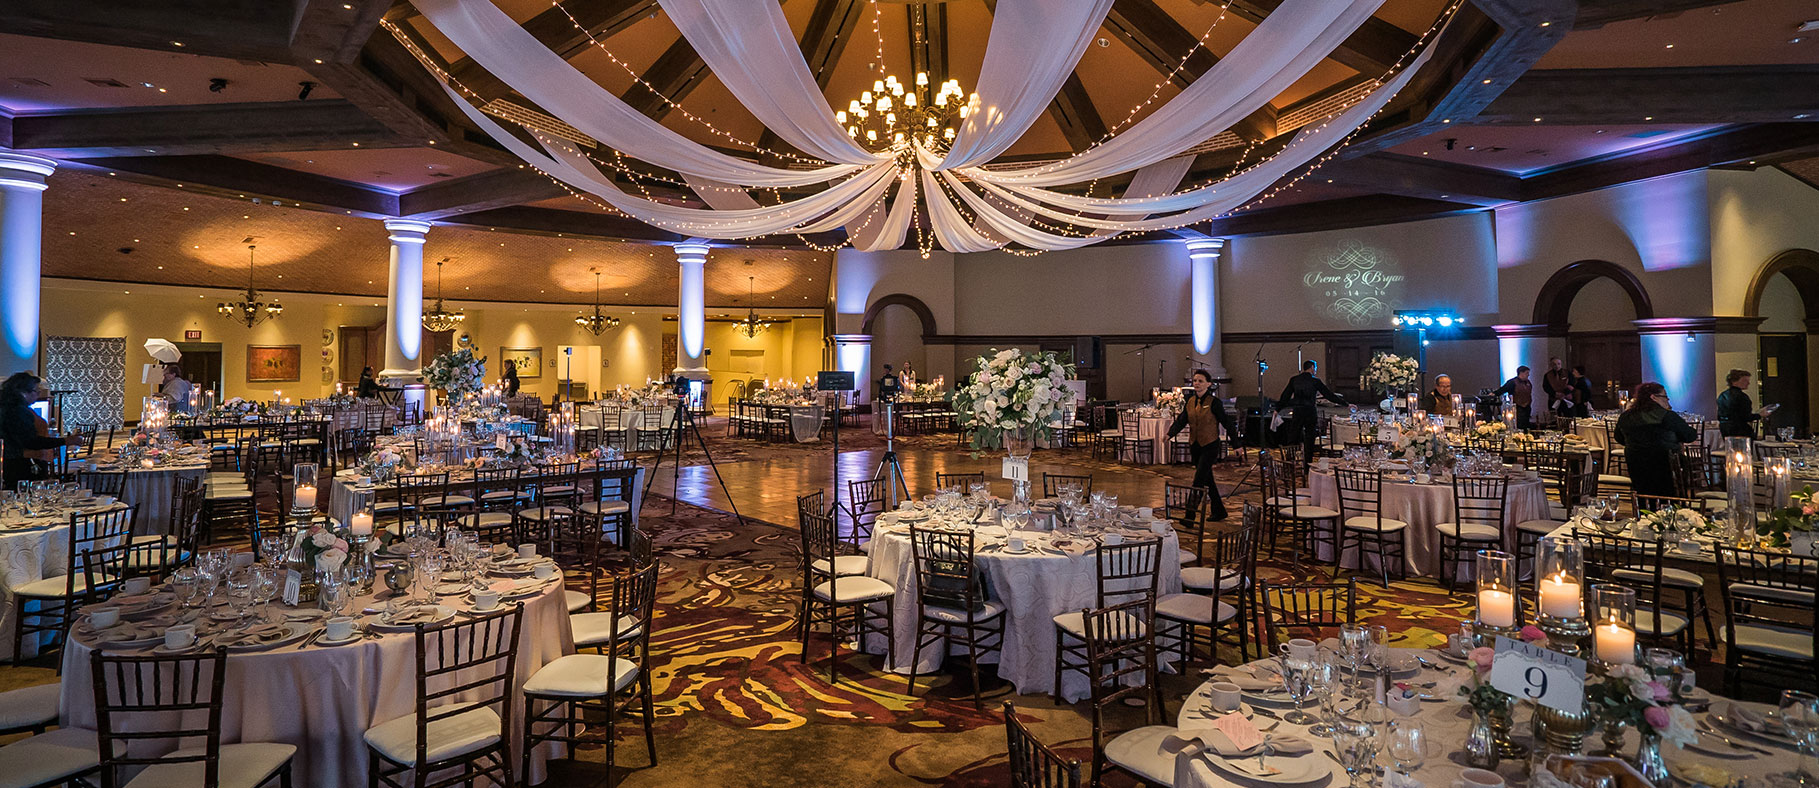 Meetings & Weddings in Las Vegas | Rampart Casino Summerlin, NV